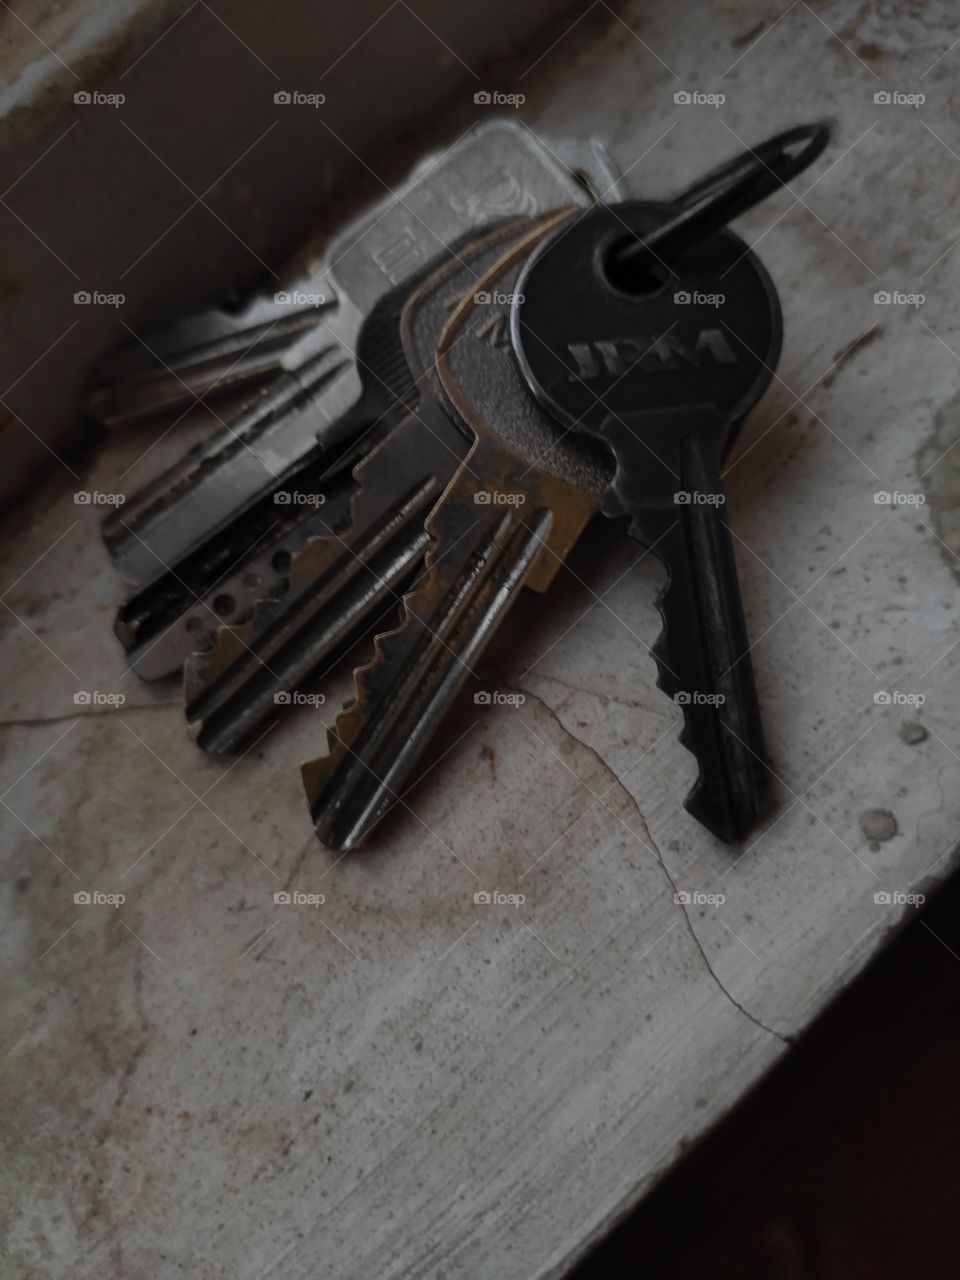 I set off old keys on a broken wall